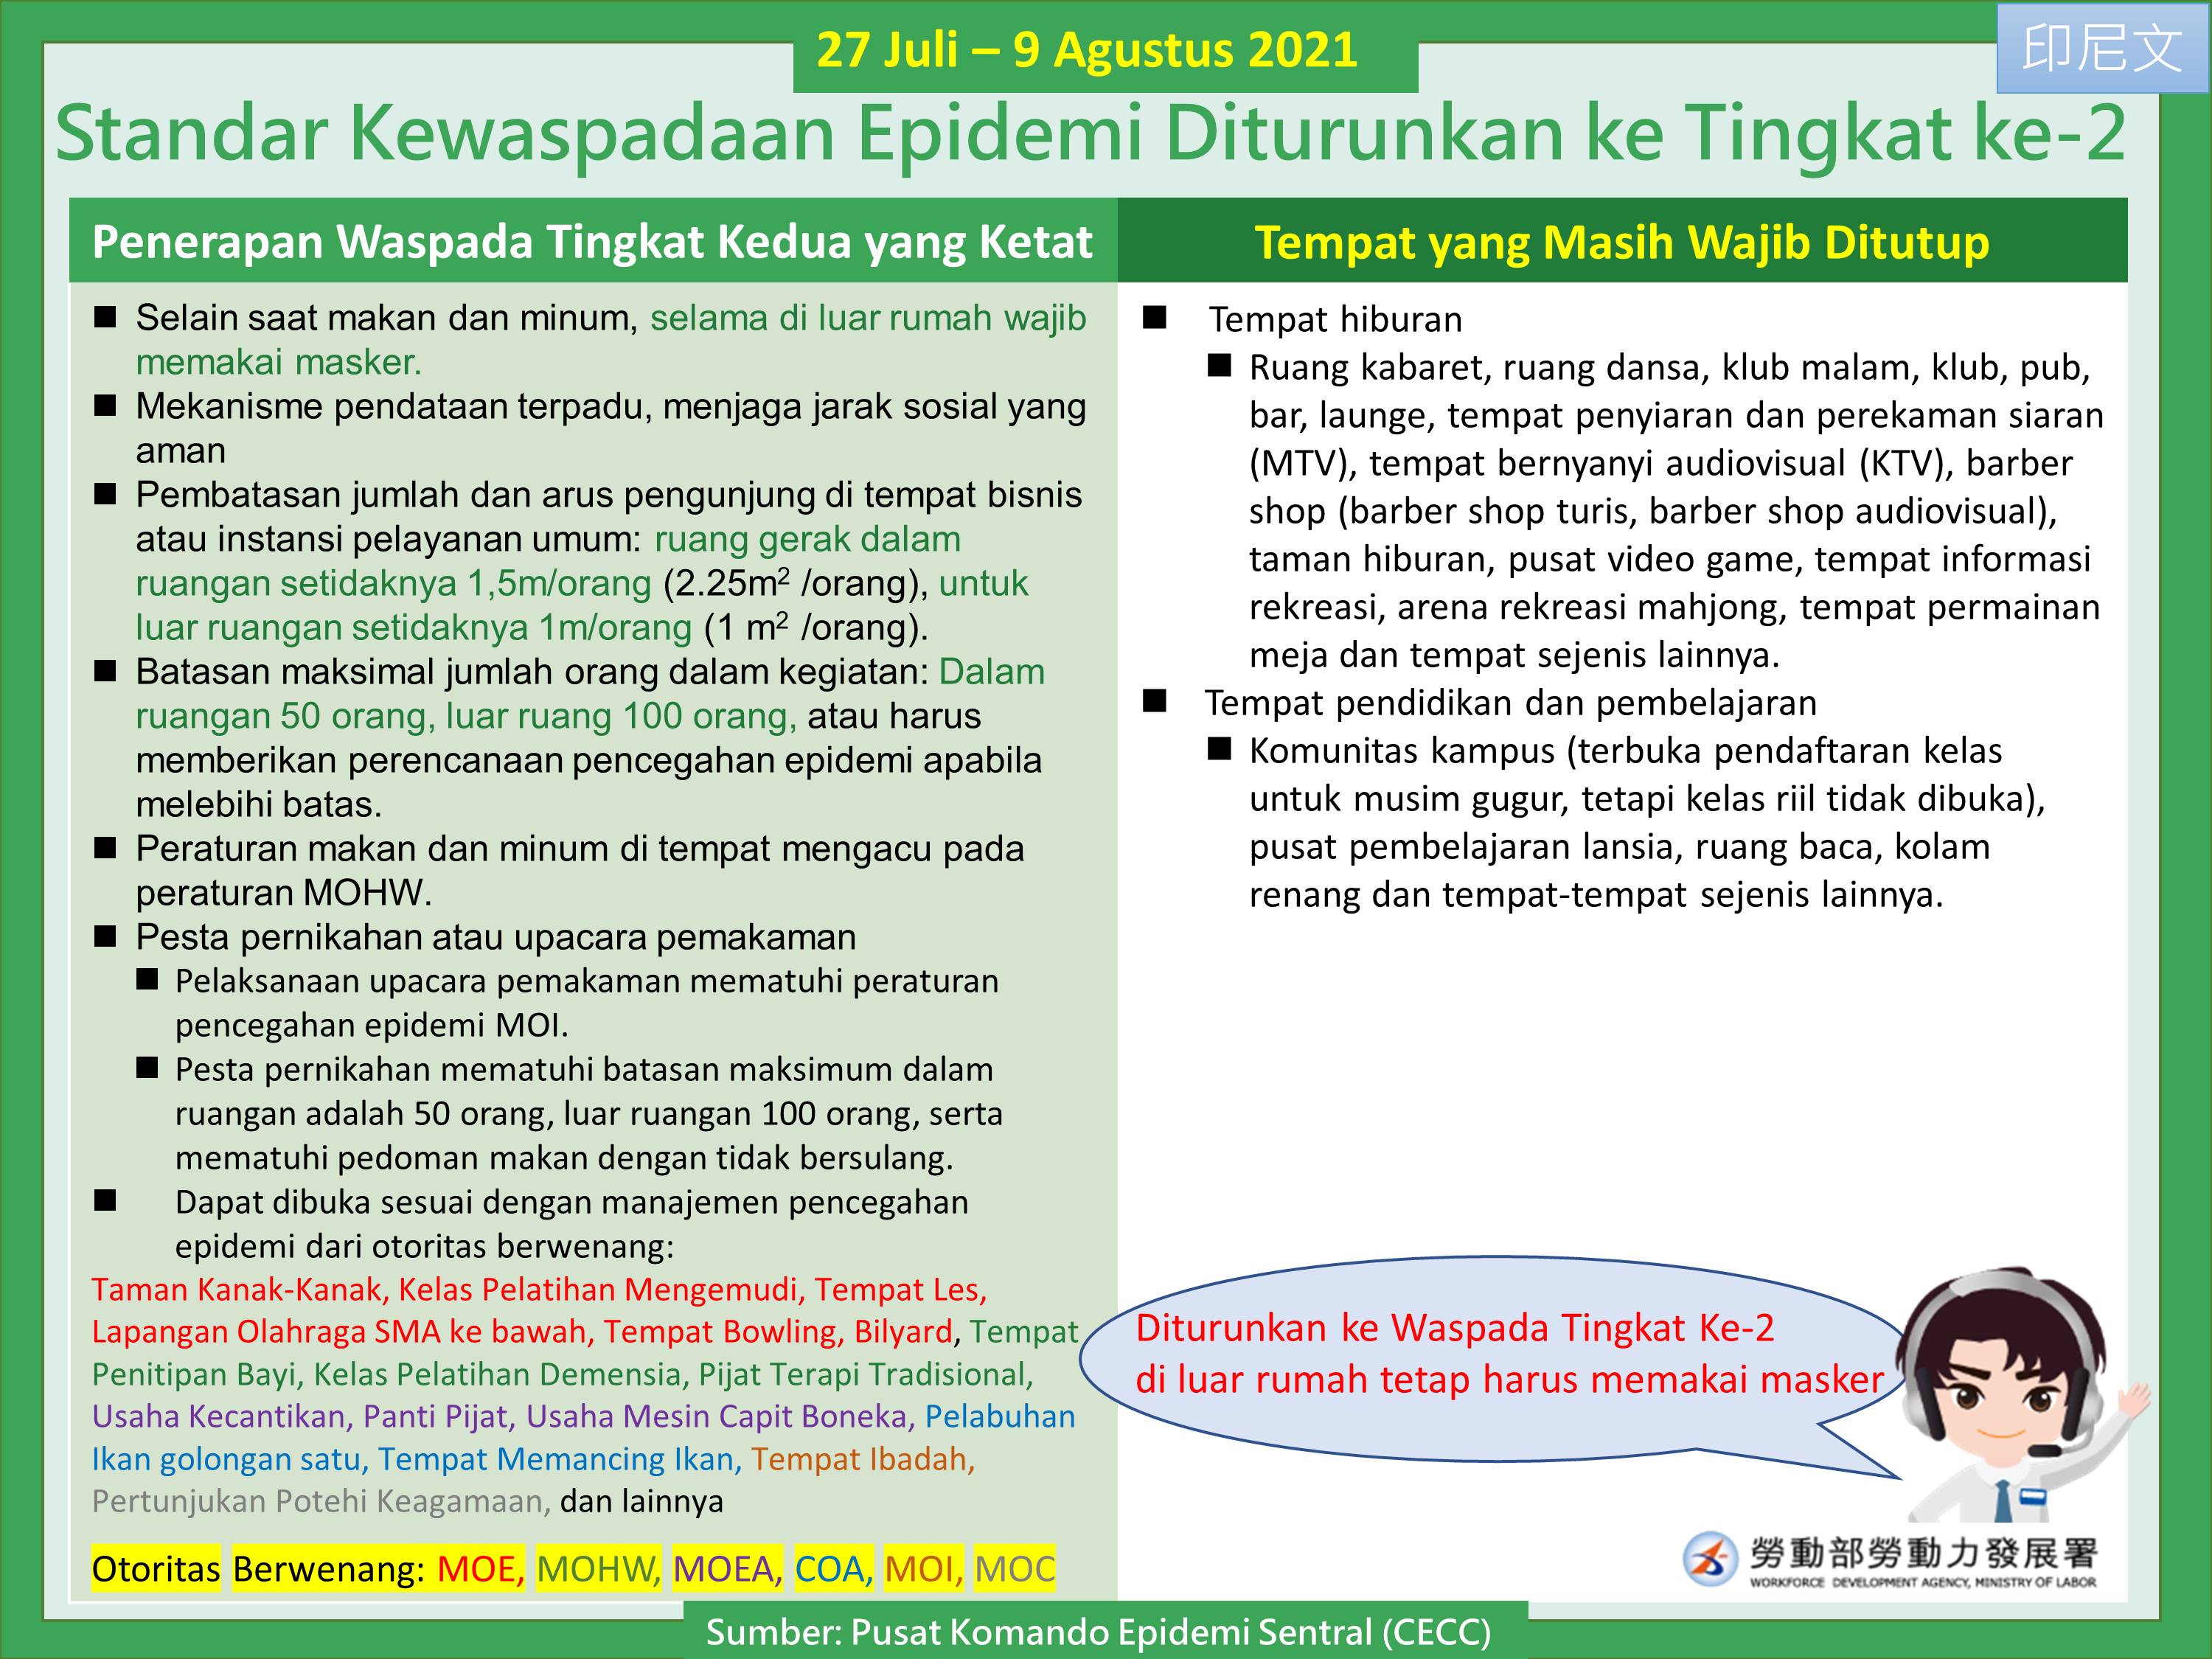 調降疫情警戒標準至第二級-印尼文